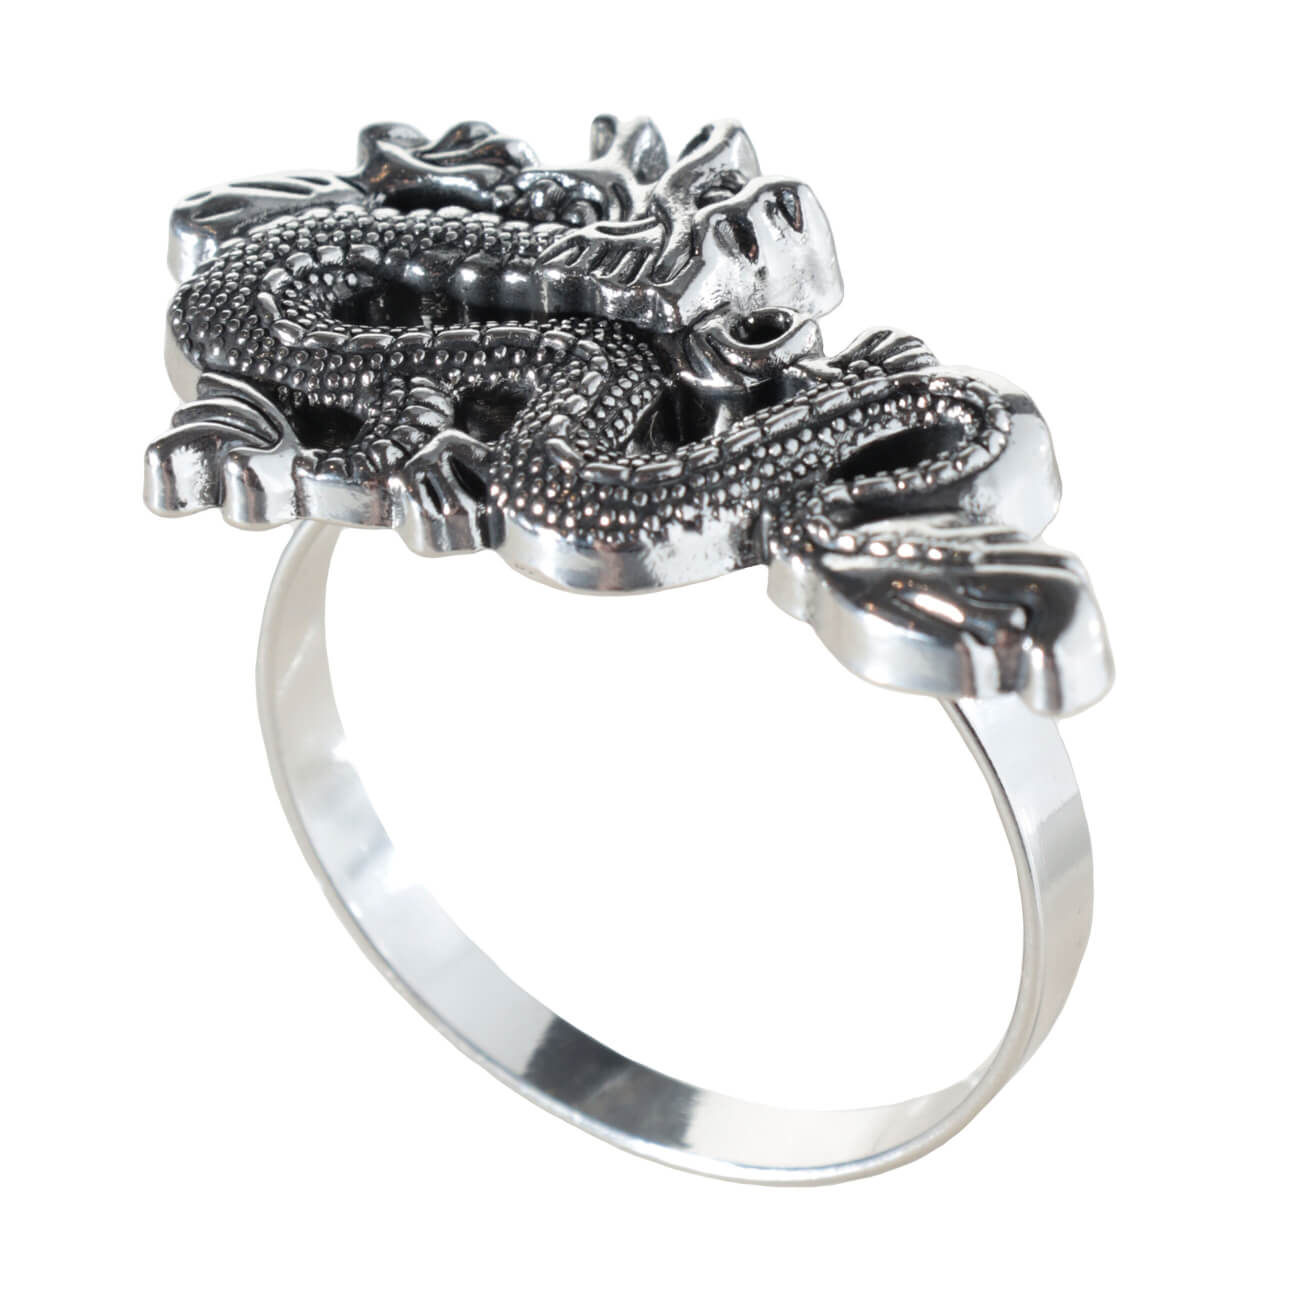 Кольцо для салфеток, 5 см, металл, серебристое, Дракон, Dragon dayron проставочное кольцо joy kie md at 01 alloy 6061 28 6 5mm анодированное серебристое